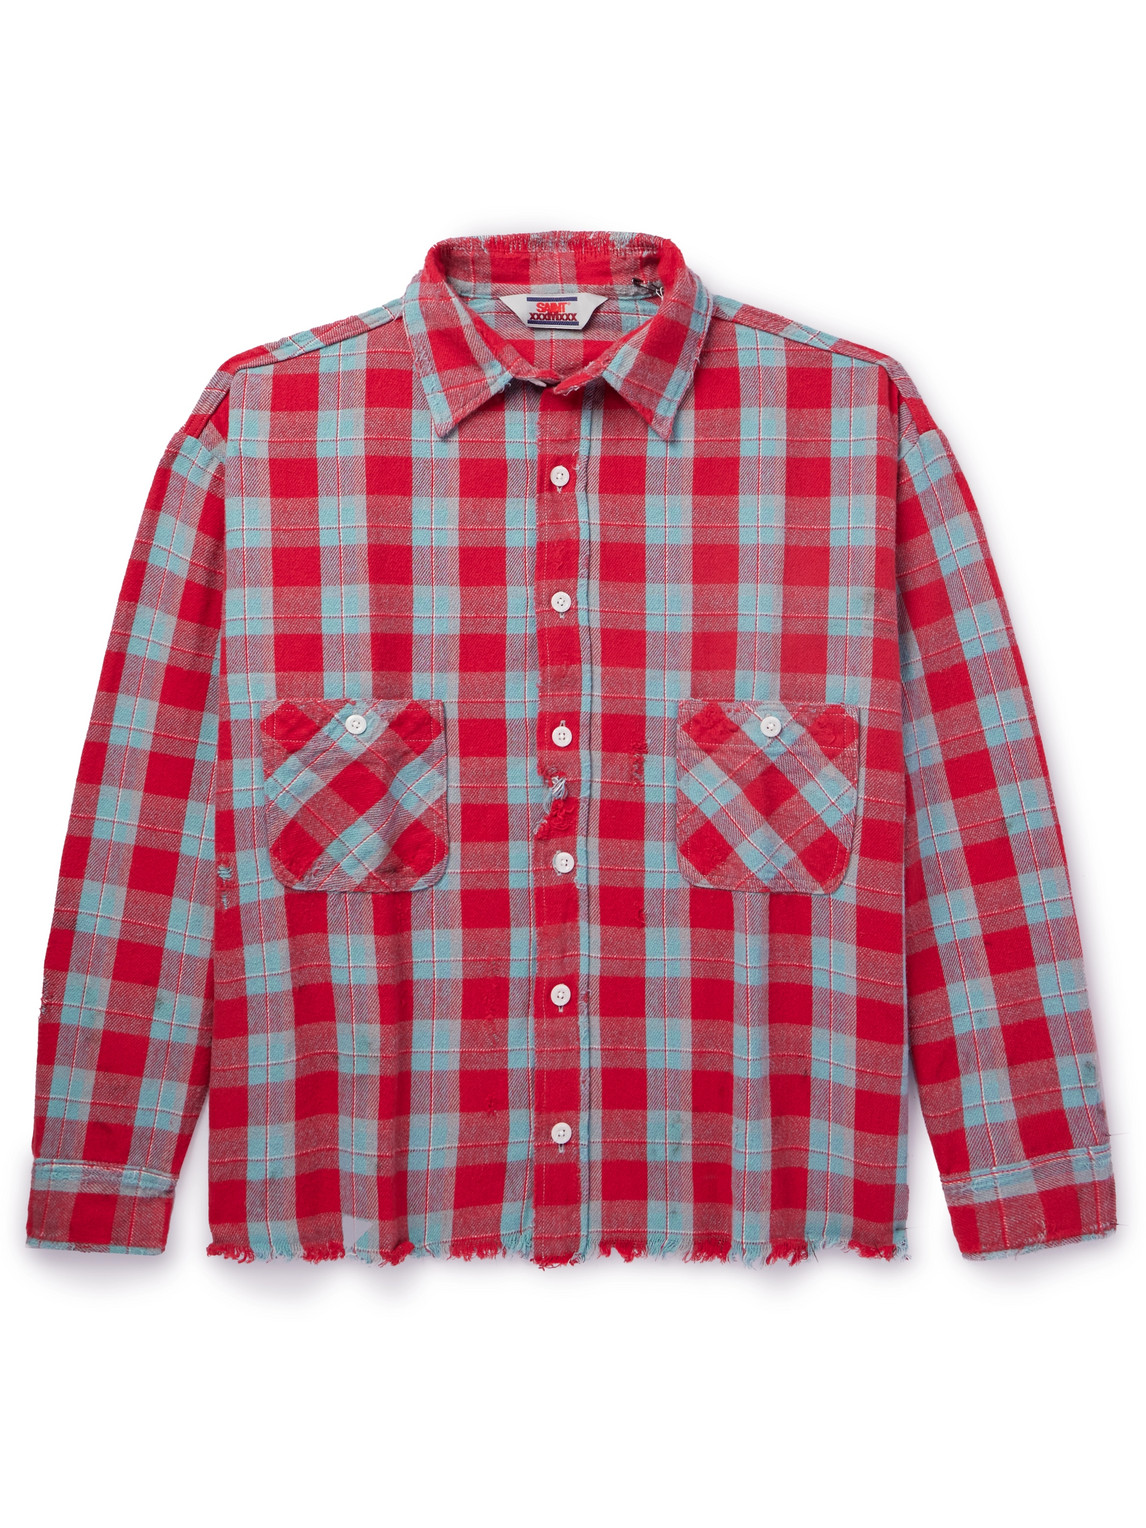 SAINT Mxxxxxx - Distressed Checked Cotton-Flannel Shirt - Men - Red - XL von SAINT Mxxxxxx